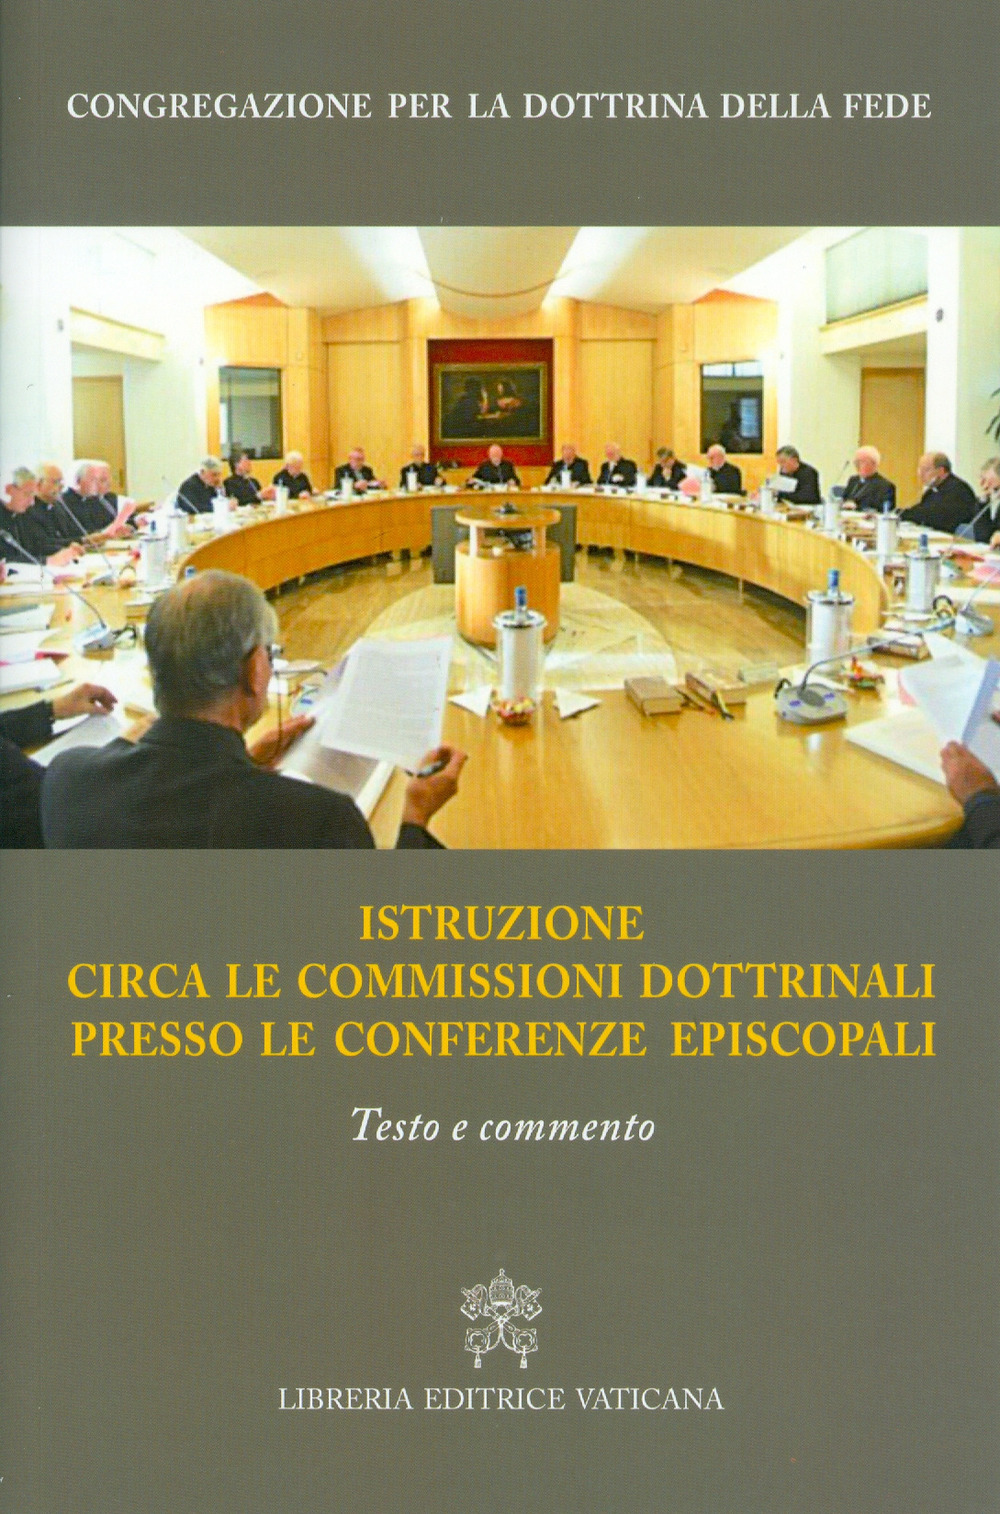 Image of Istruzione circa le commissioni dottrinali presso le Conferenze episcopali. Testo e commento